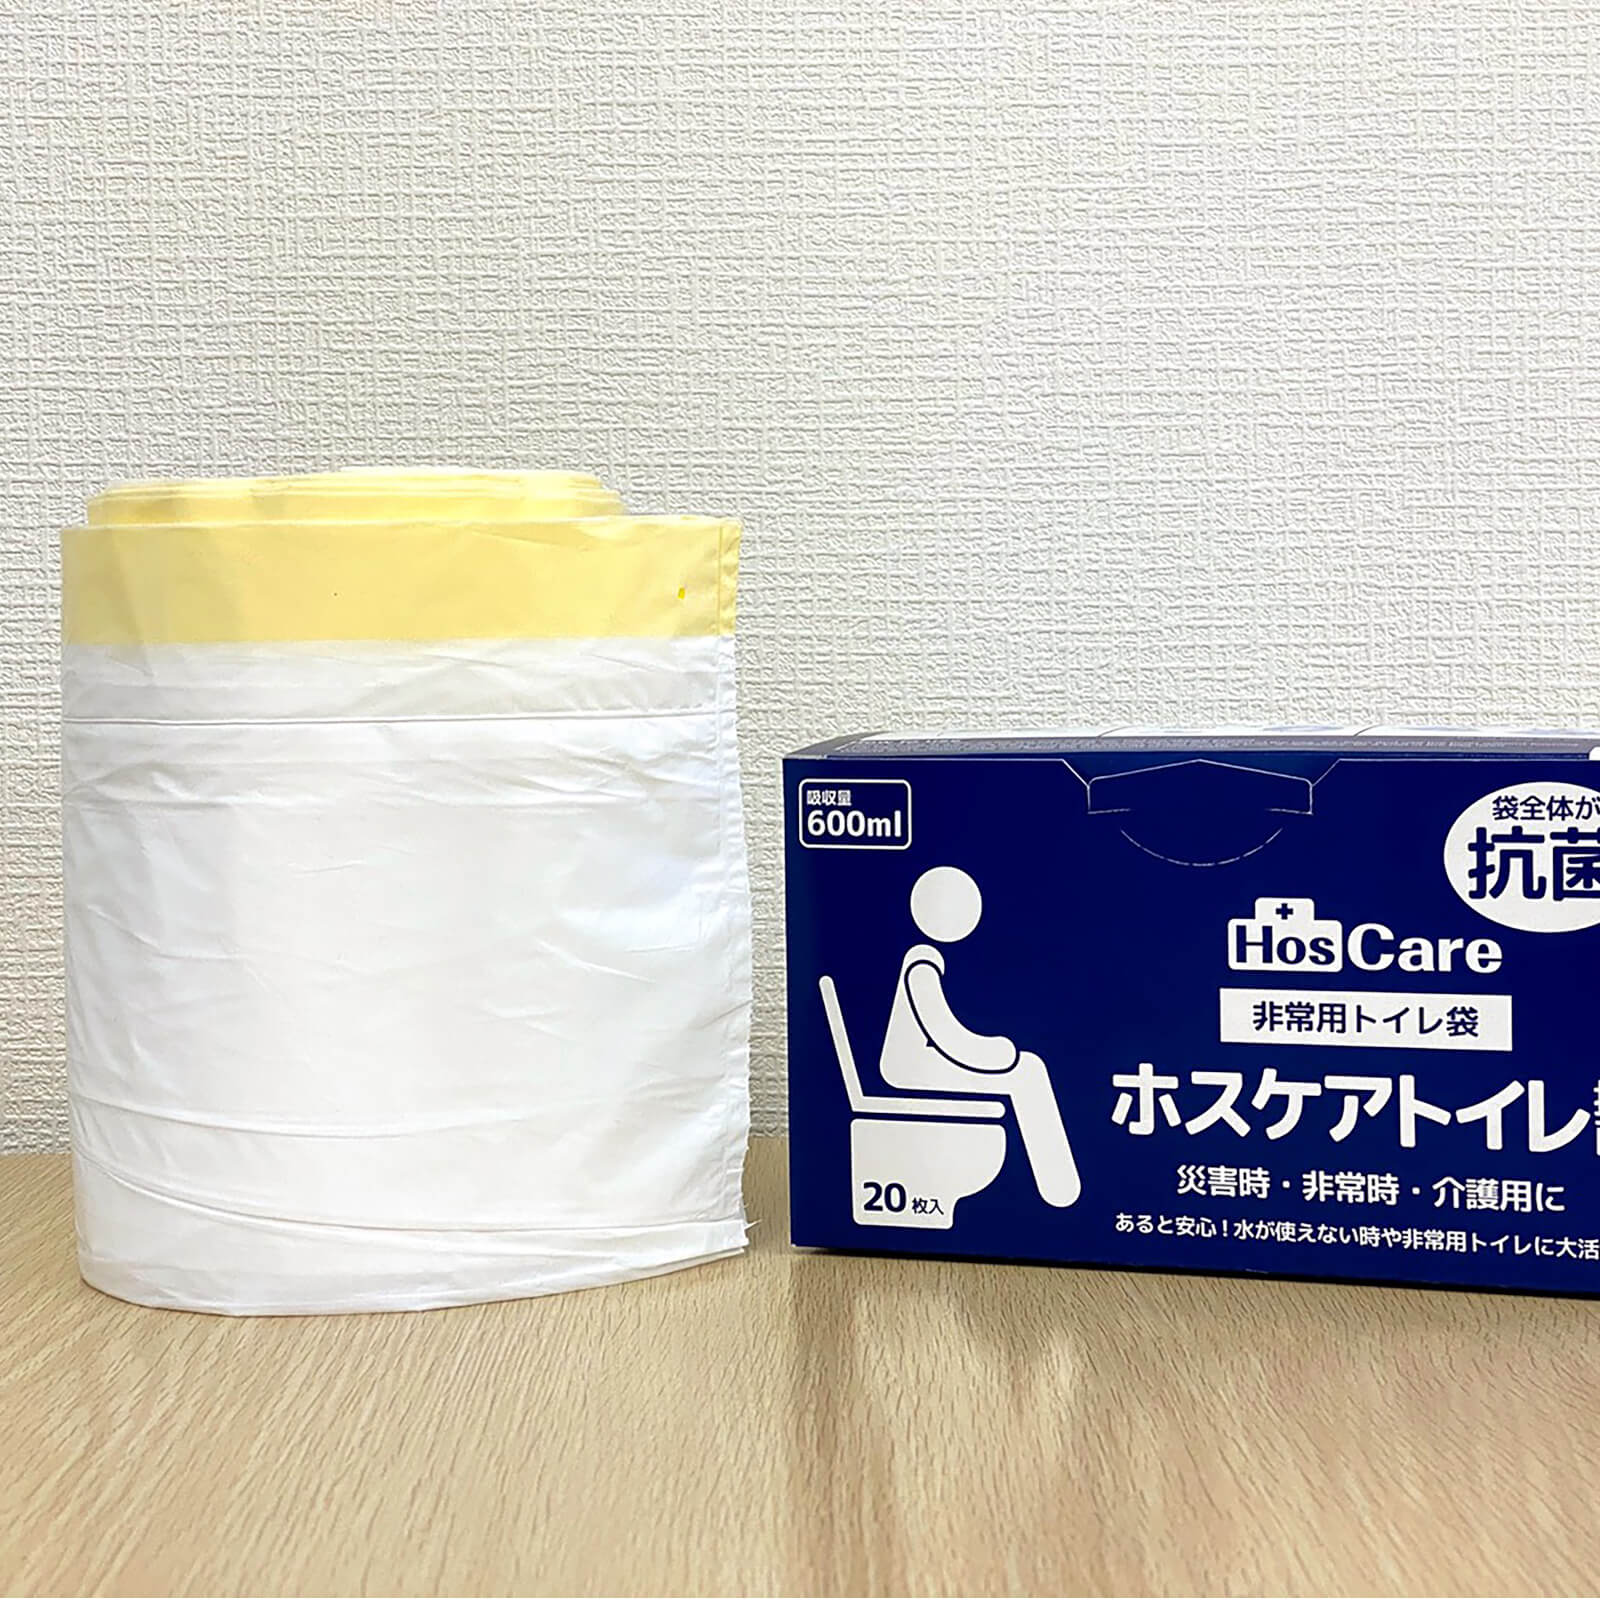 ホスケアトイレ抗菌(2箱組) | 朝日新聞モール